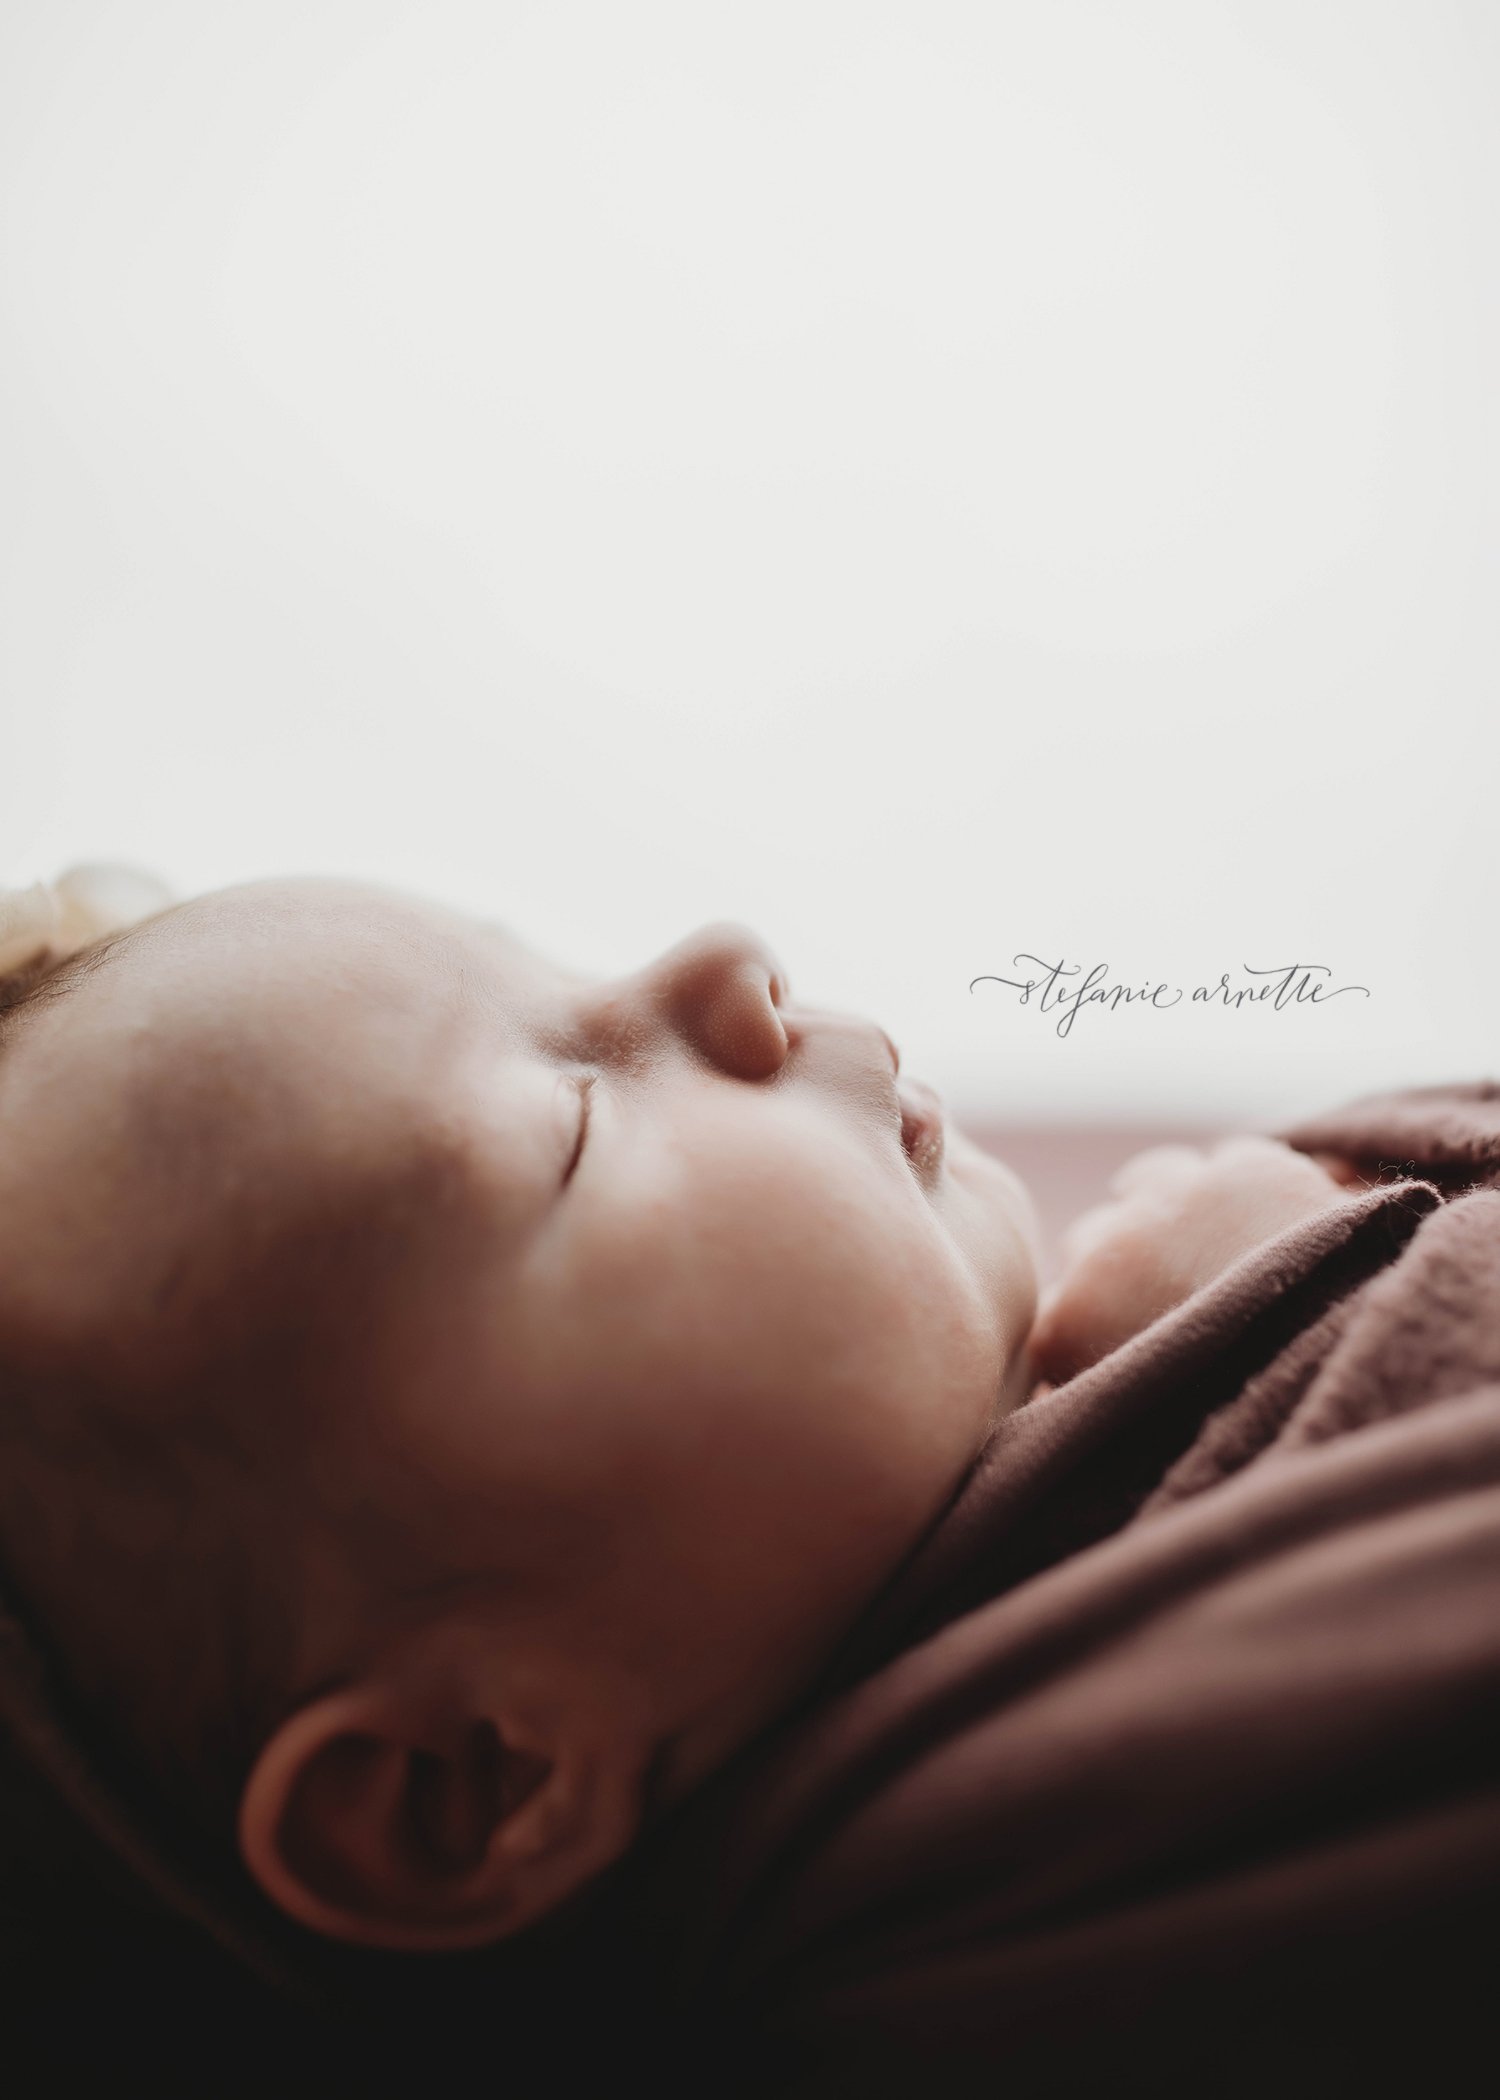 douglasville newborn photographer_12.jpg